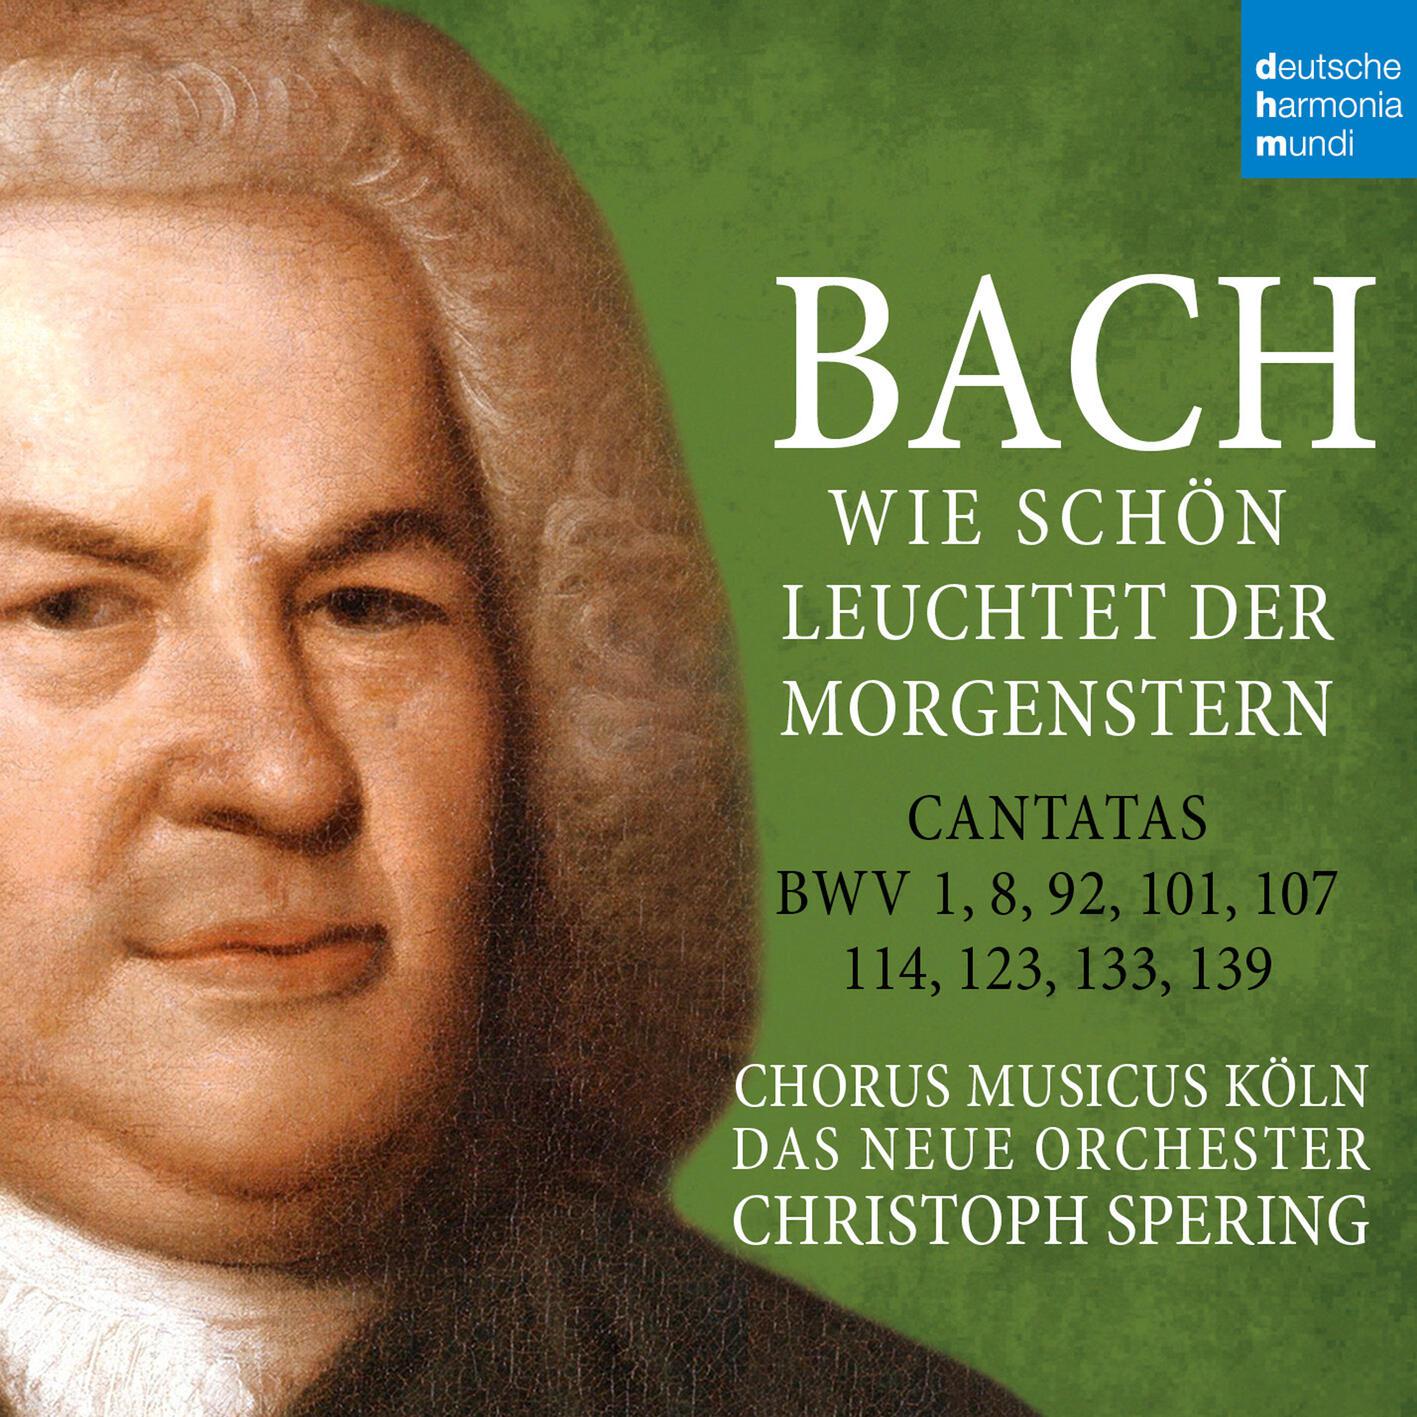 Christoph Spering - Was willst du dich betrüben, BWV 107:VI. Darum ich mich ihm ergebe (Aria)